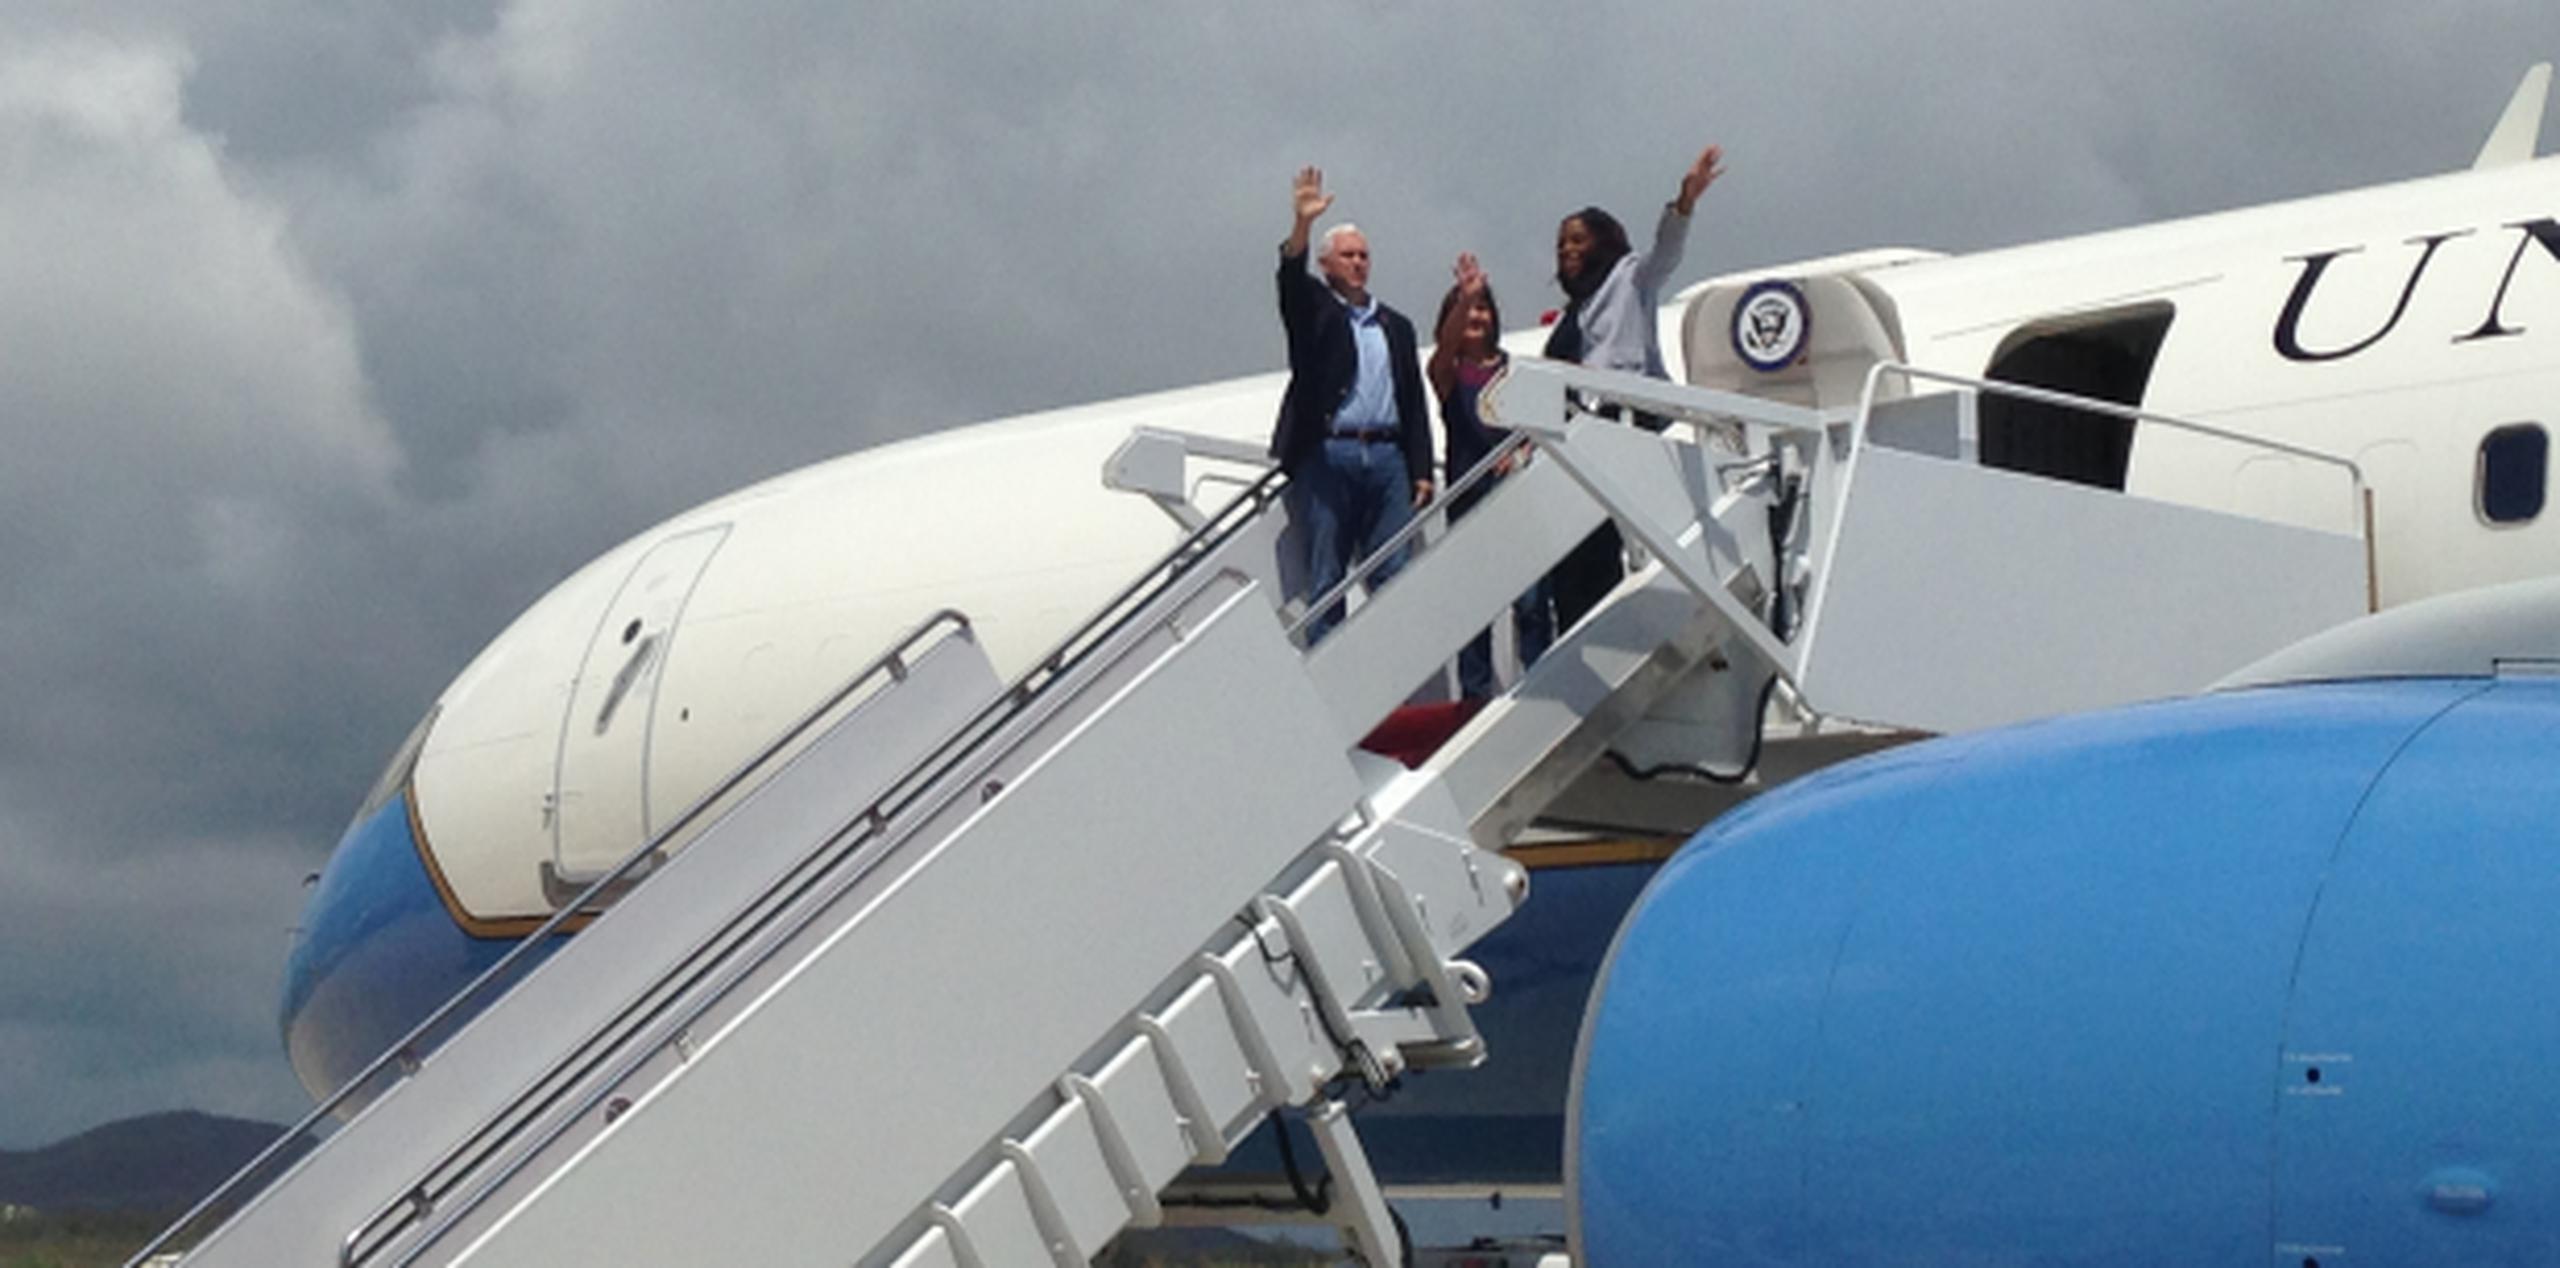 Antes de venir a Puerto Rico, el vicepresidente Mike Pence hizo una parada en las Islas Vírgenes. (AP/Ken Thomas)
